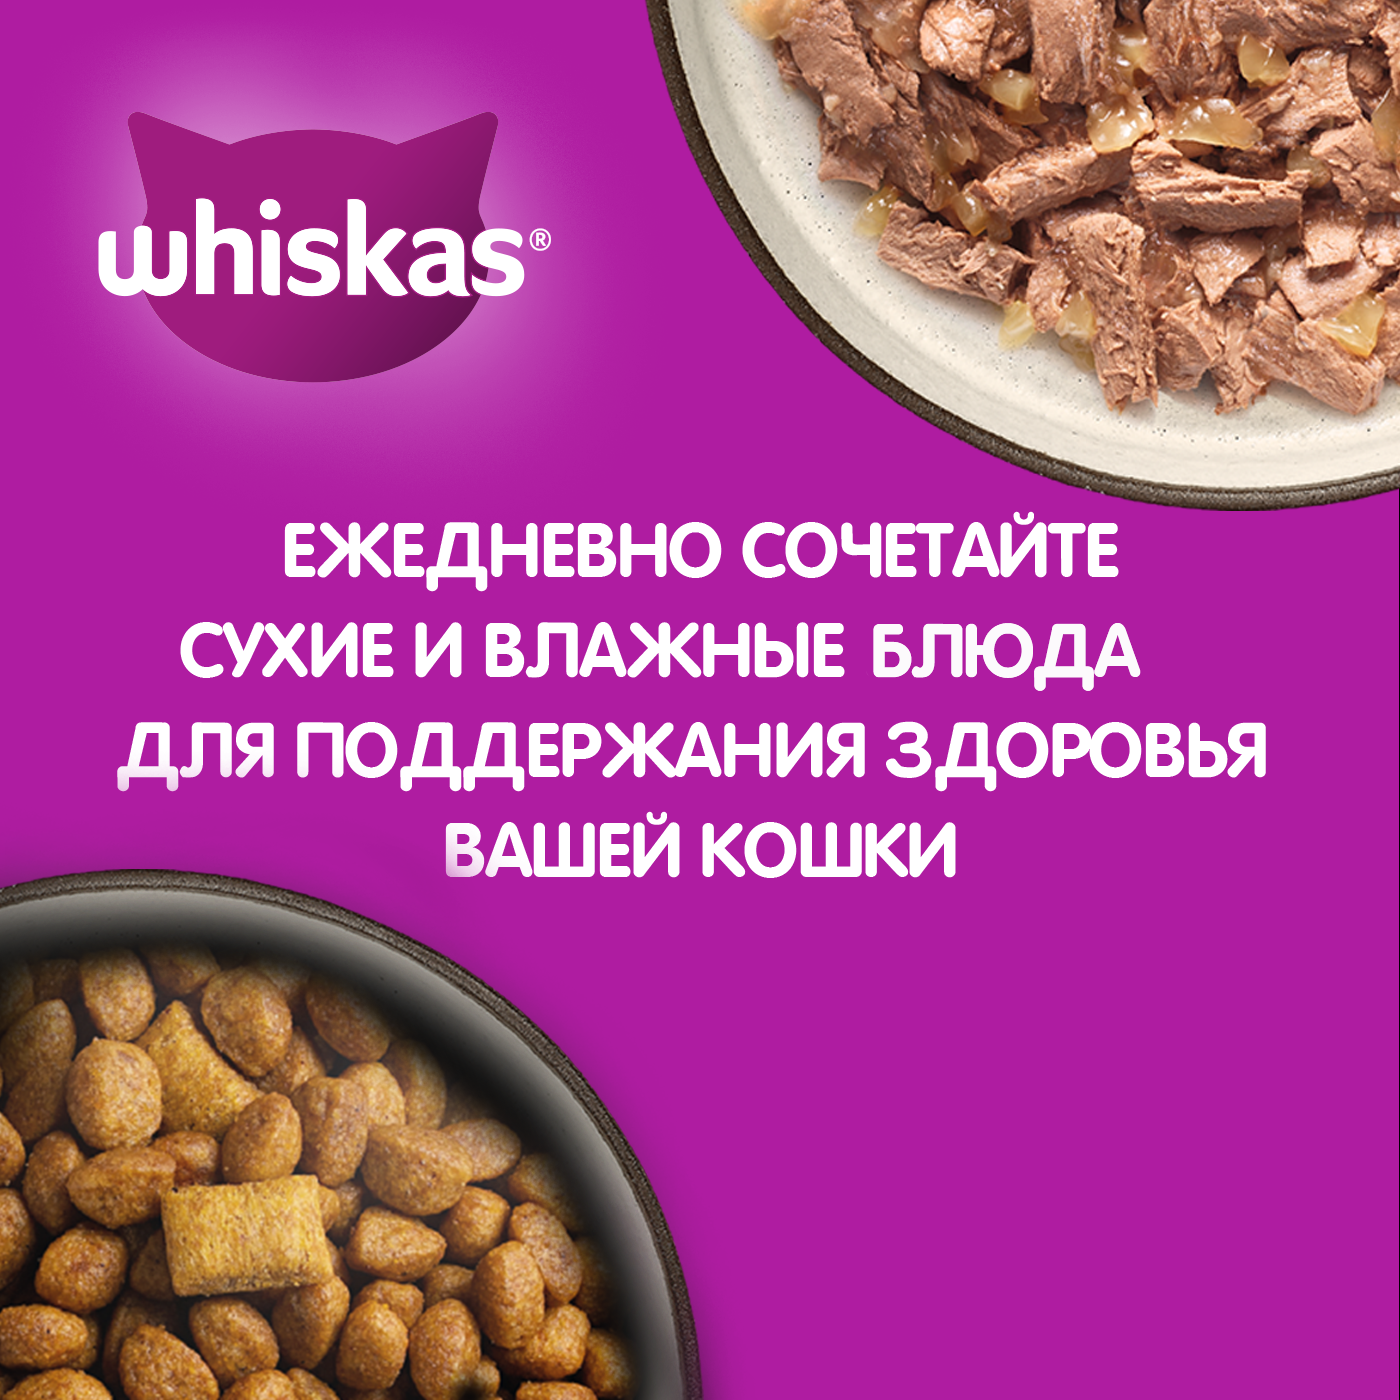 Корм сухой Whiskas для взрослых стерилизованных кошек, с курицей, 350 г